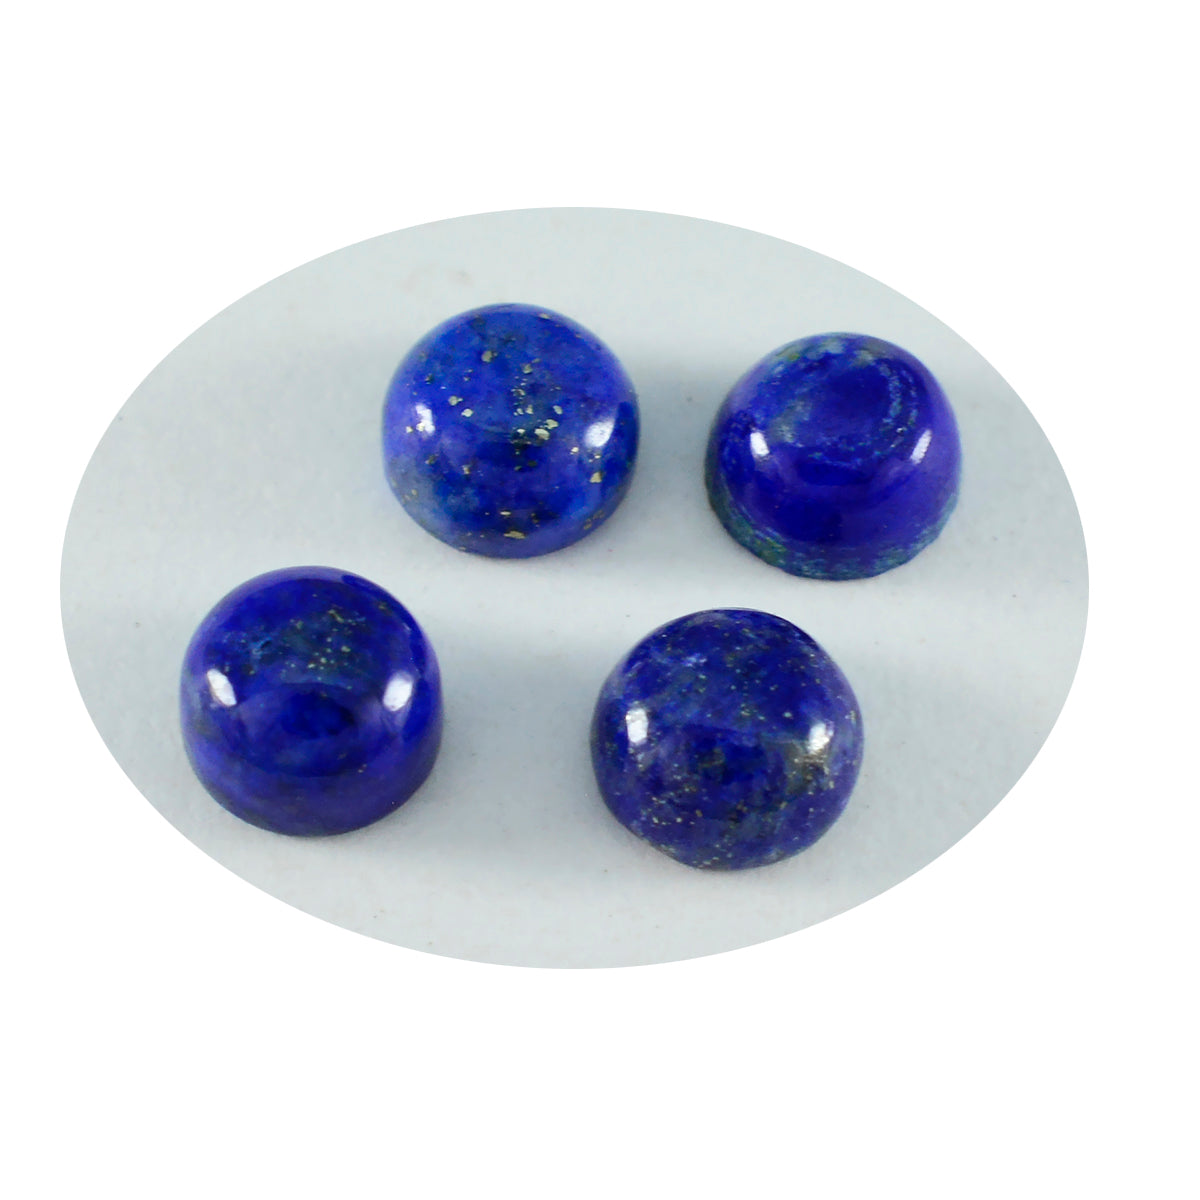 Riyogems – cabochon lapis-lazuli bleu, forme ronde, belle qualité, pierres précieuses en vrac, 6x6mm, 1 pièce